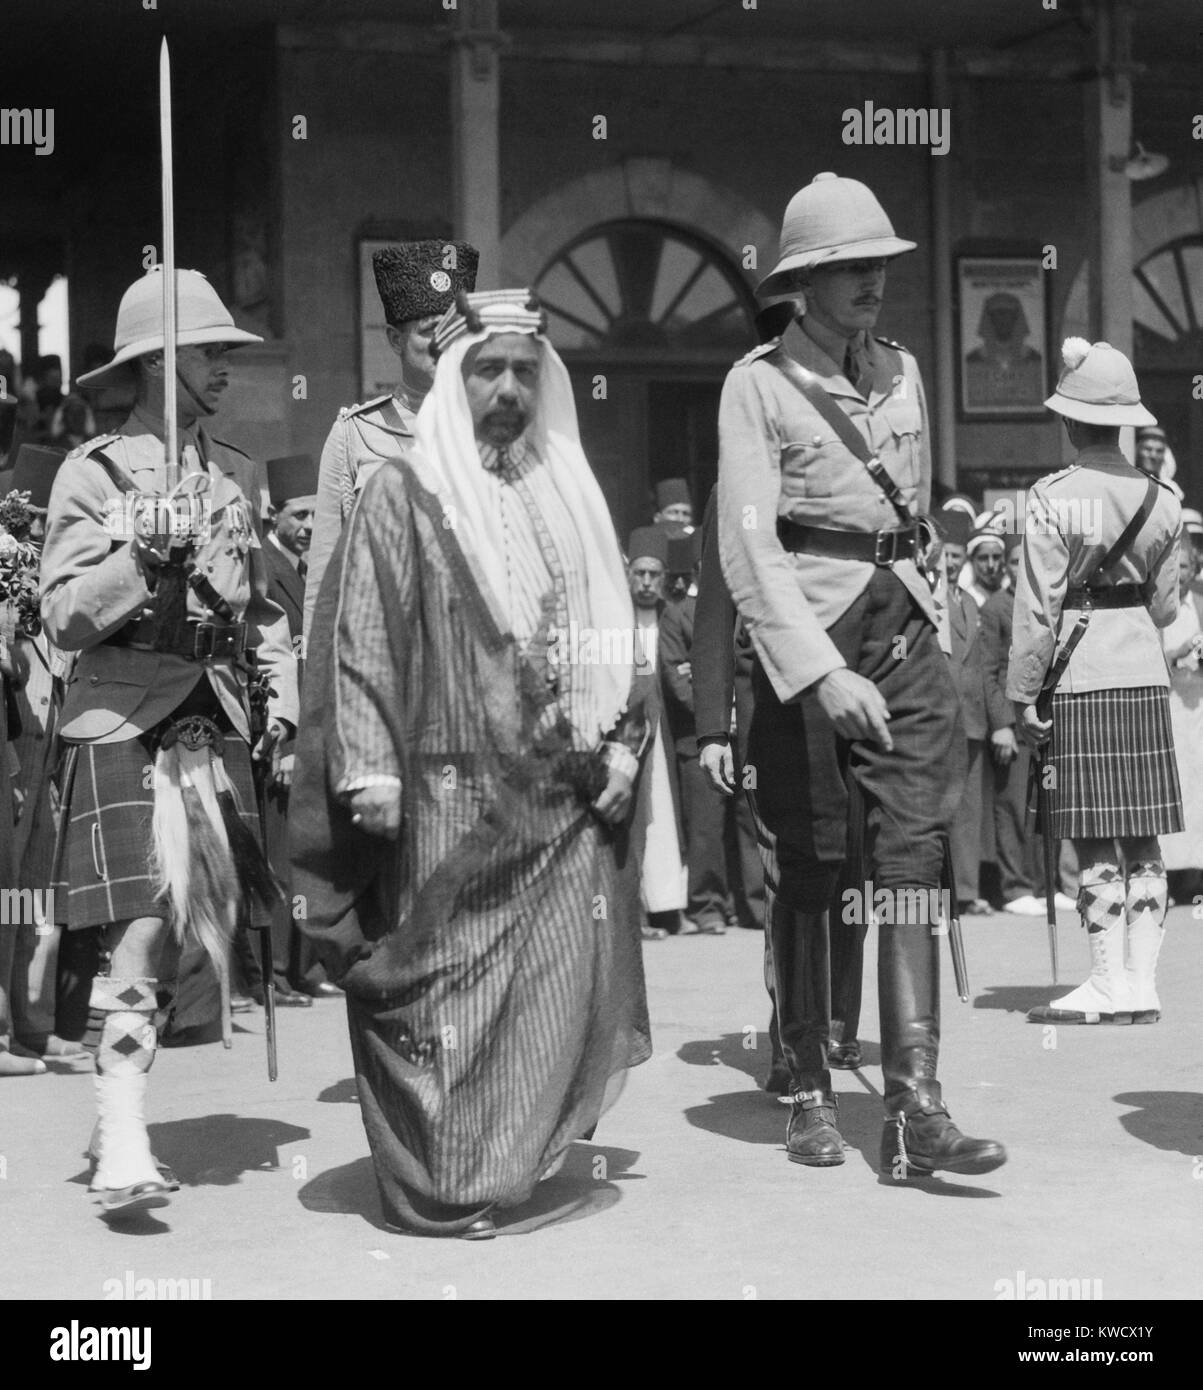 Ho Abdullah bin al-Hussein, emiro di Transgiordania, camminando tra due britannici al personale militare. Era a Gerusalemme dopo il ritorno da Londra in 1935 (BSLOC 2017 1 96) Foto Stock